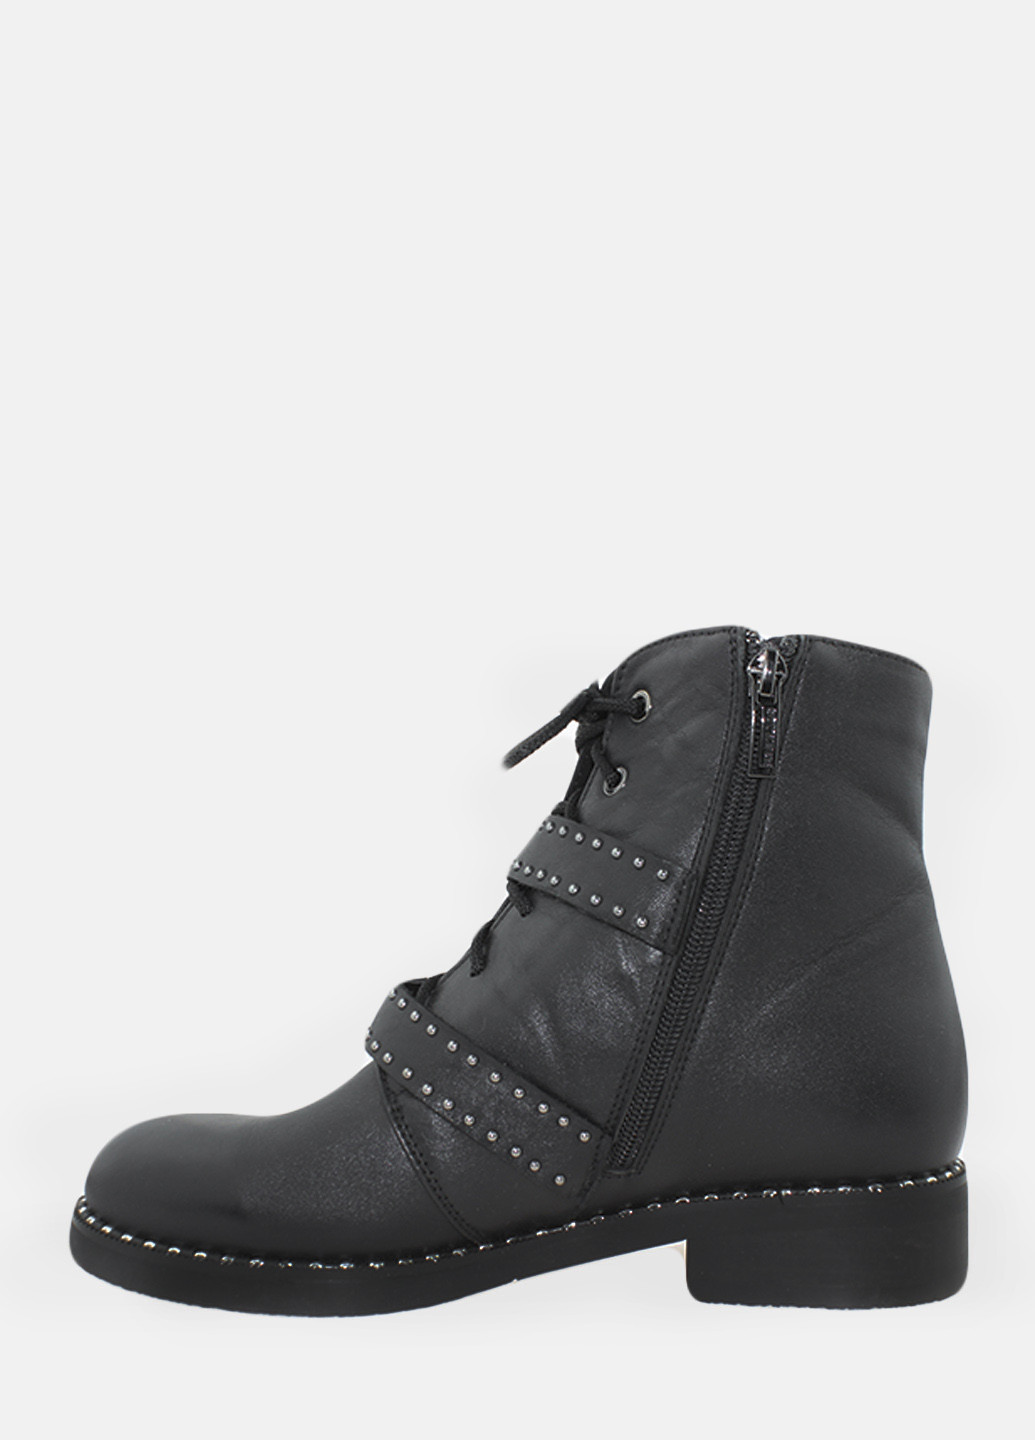 Зимние ботинки rsb7104-2 черный Sothby's